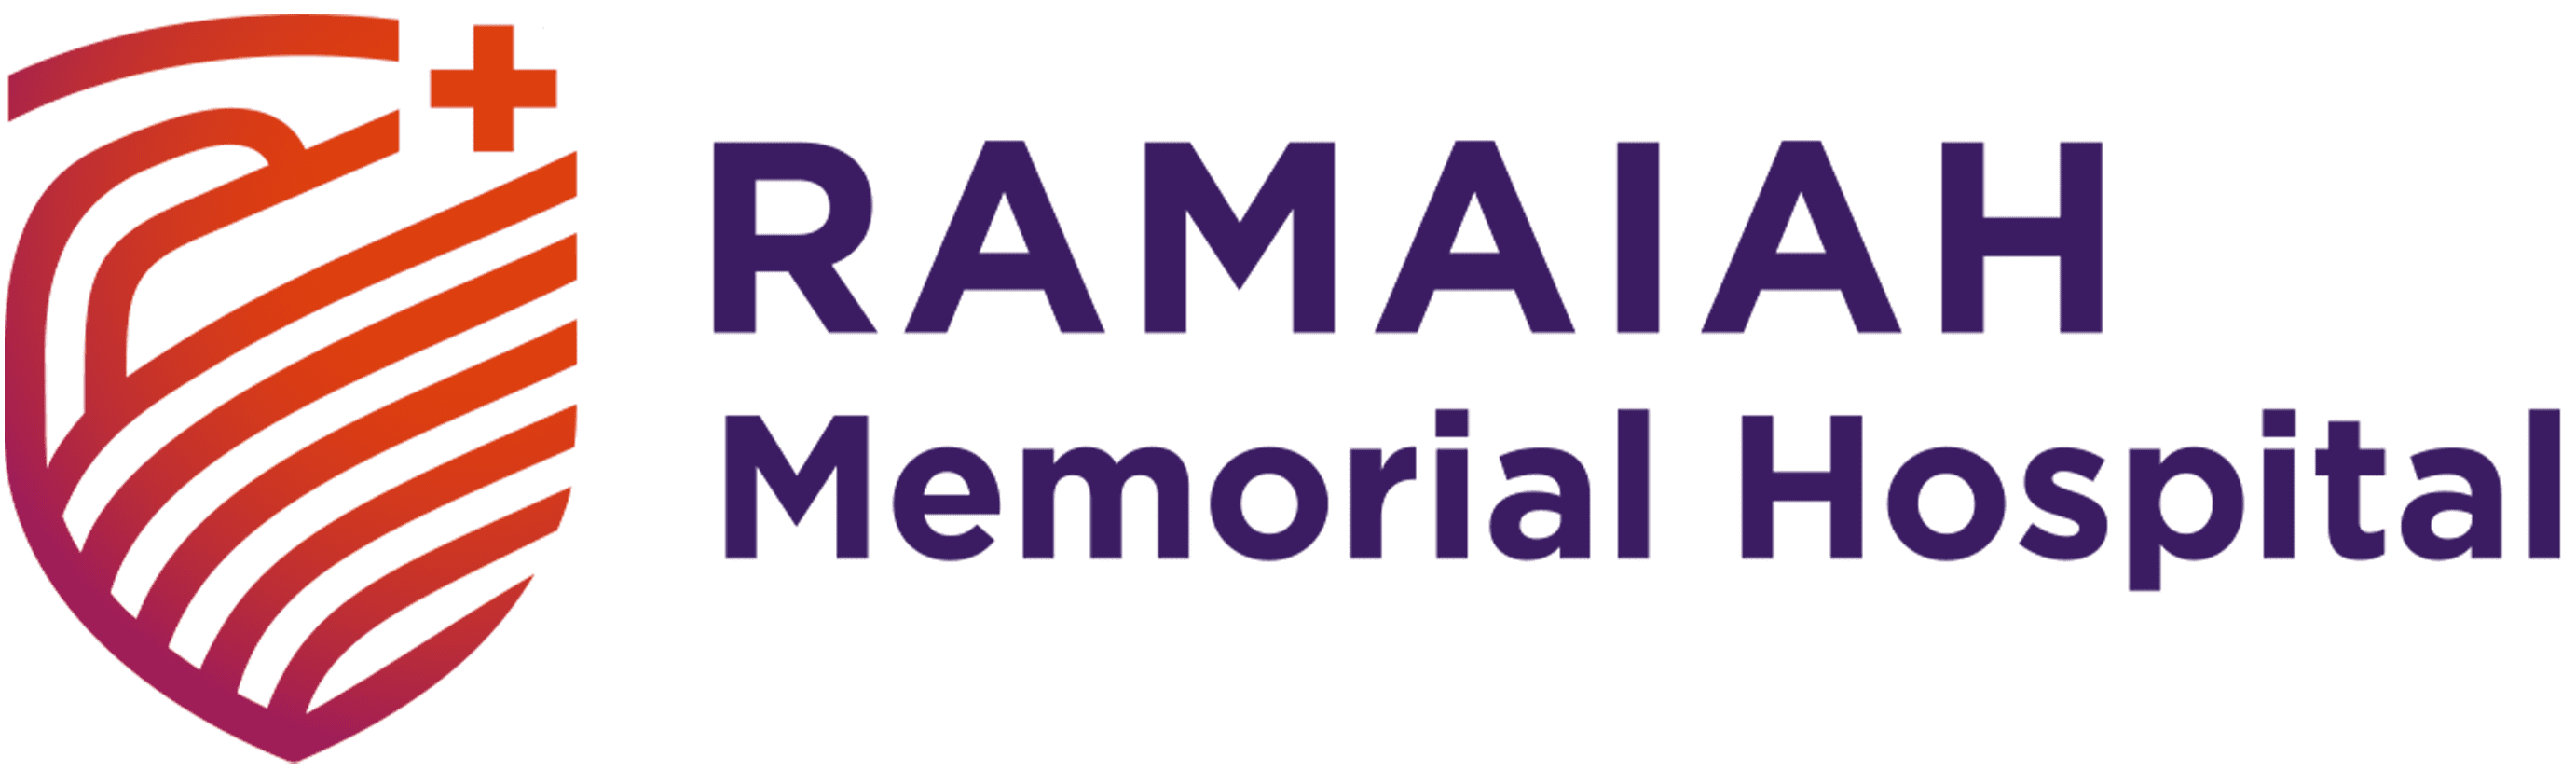 MS Ramaiah Memorial Hospital